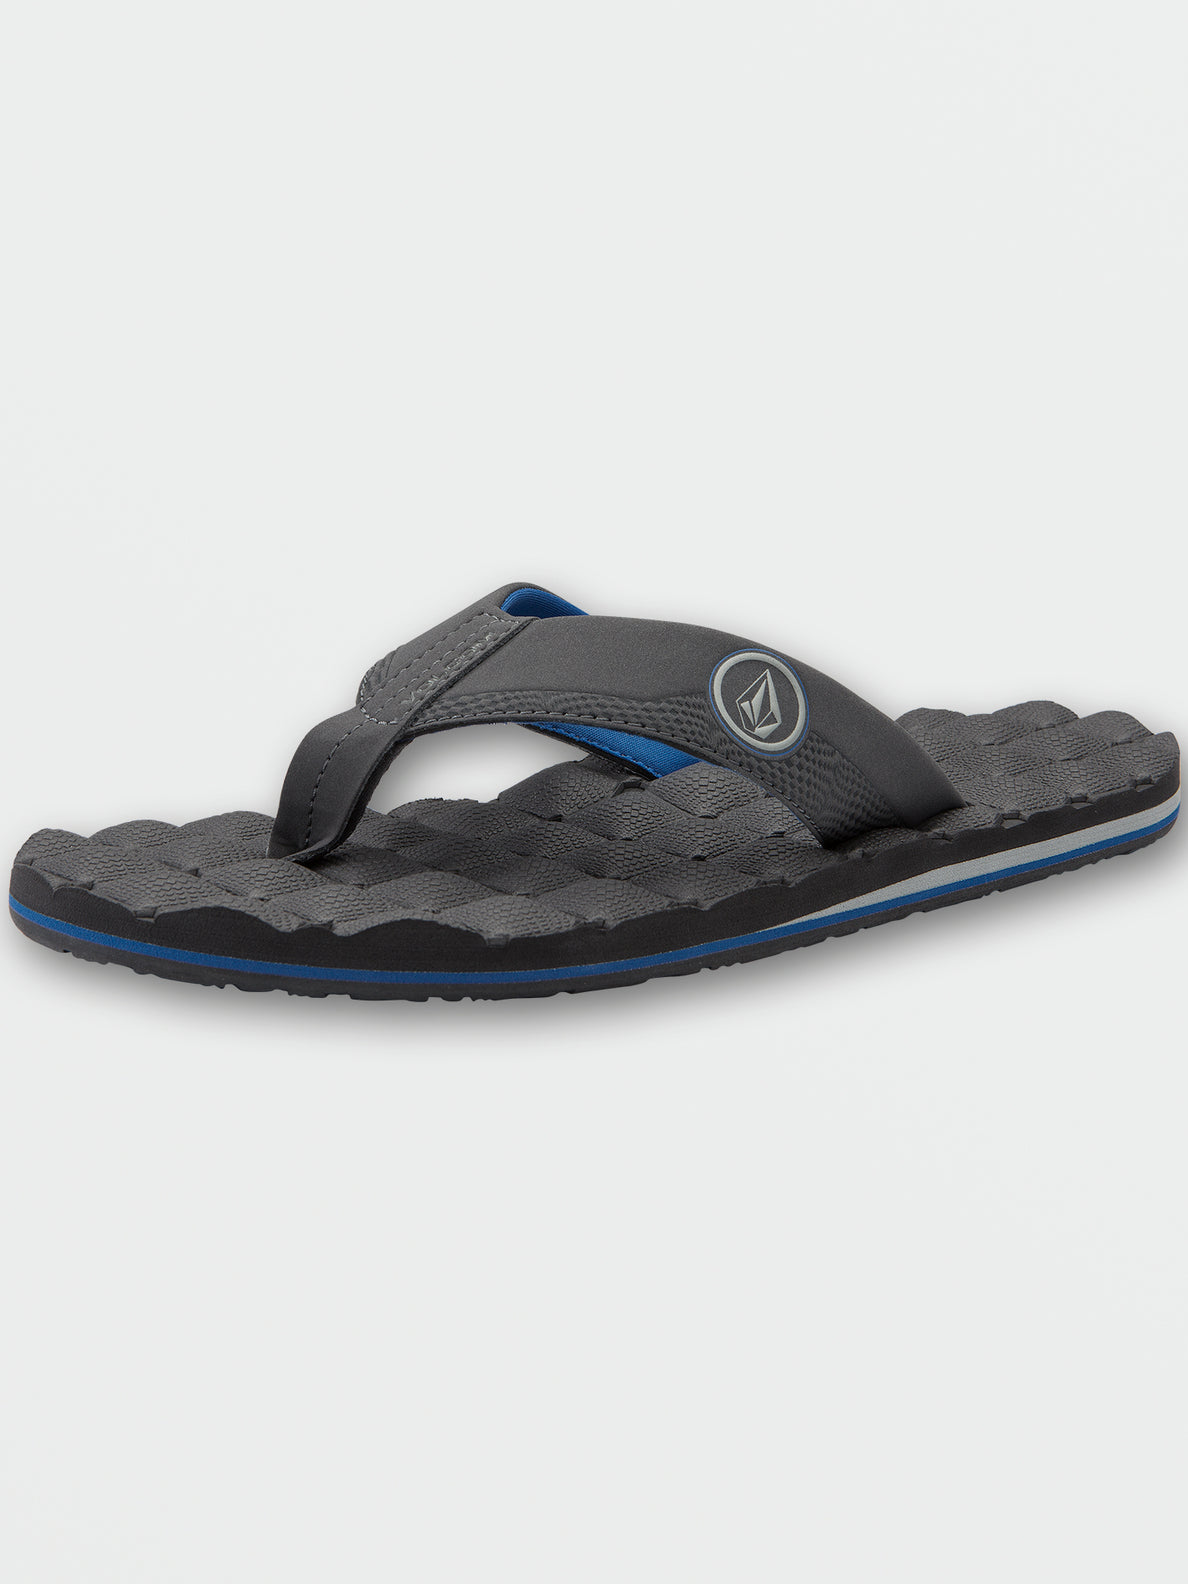 Recliner Sandals - Blue Combo (V0811520_BCB) [5]